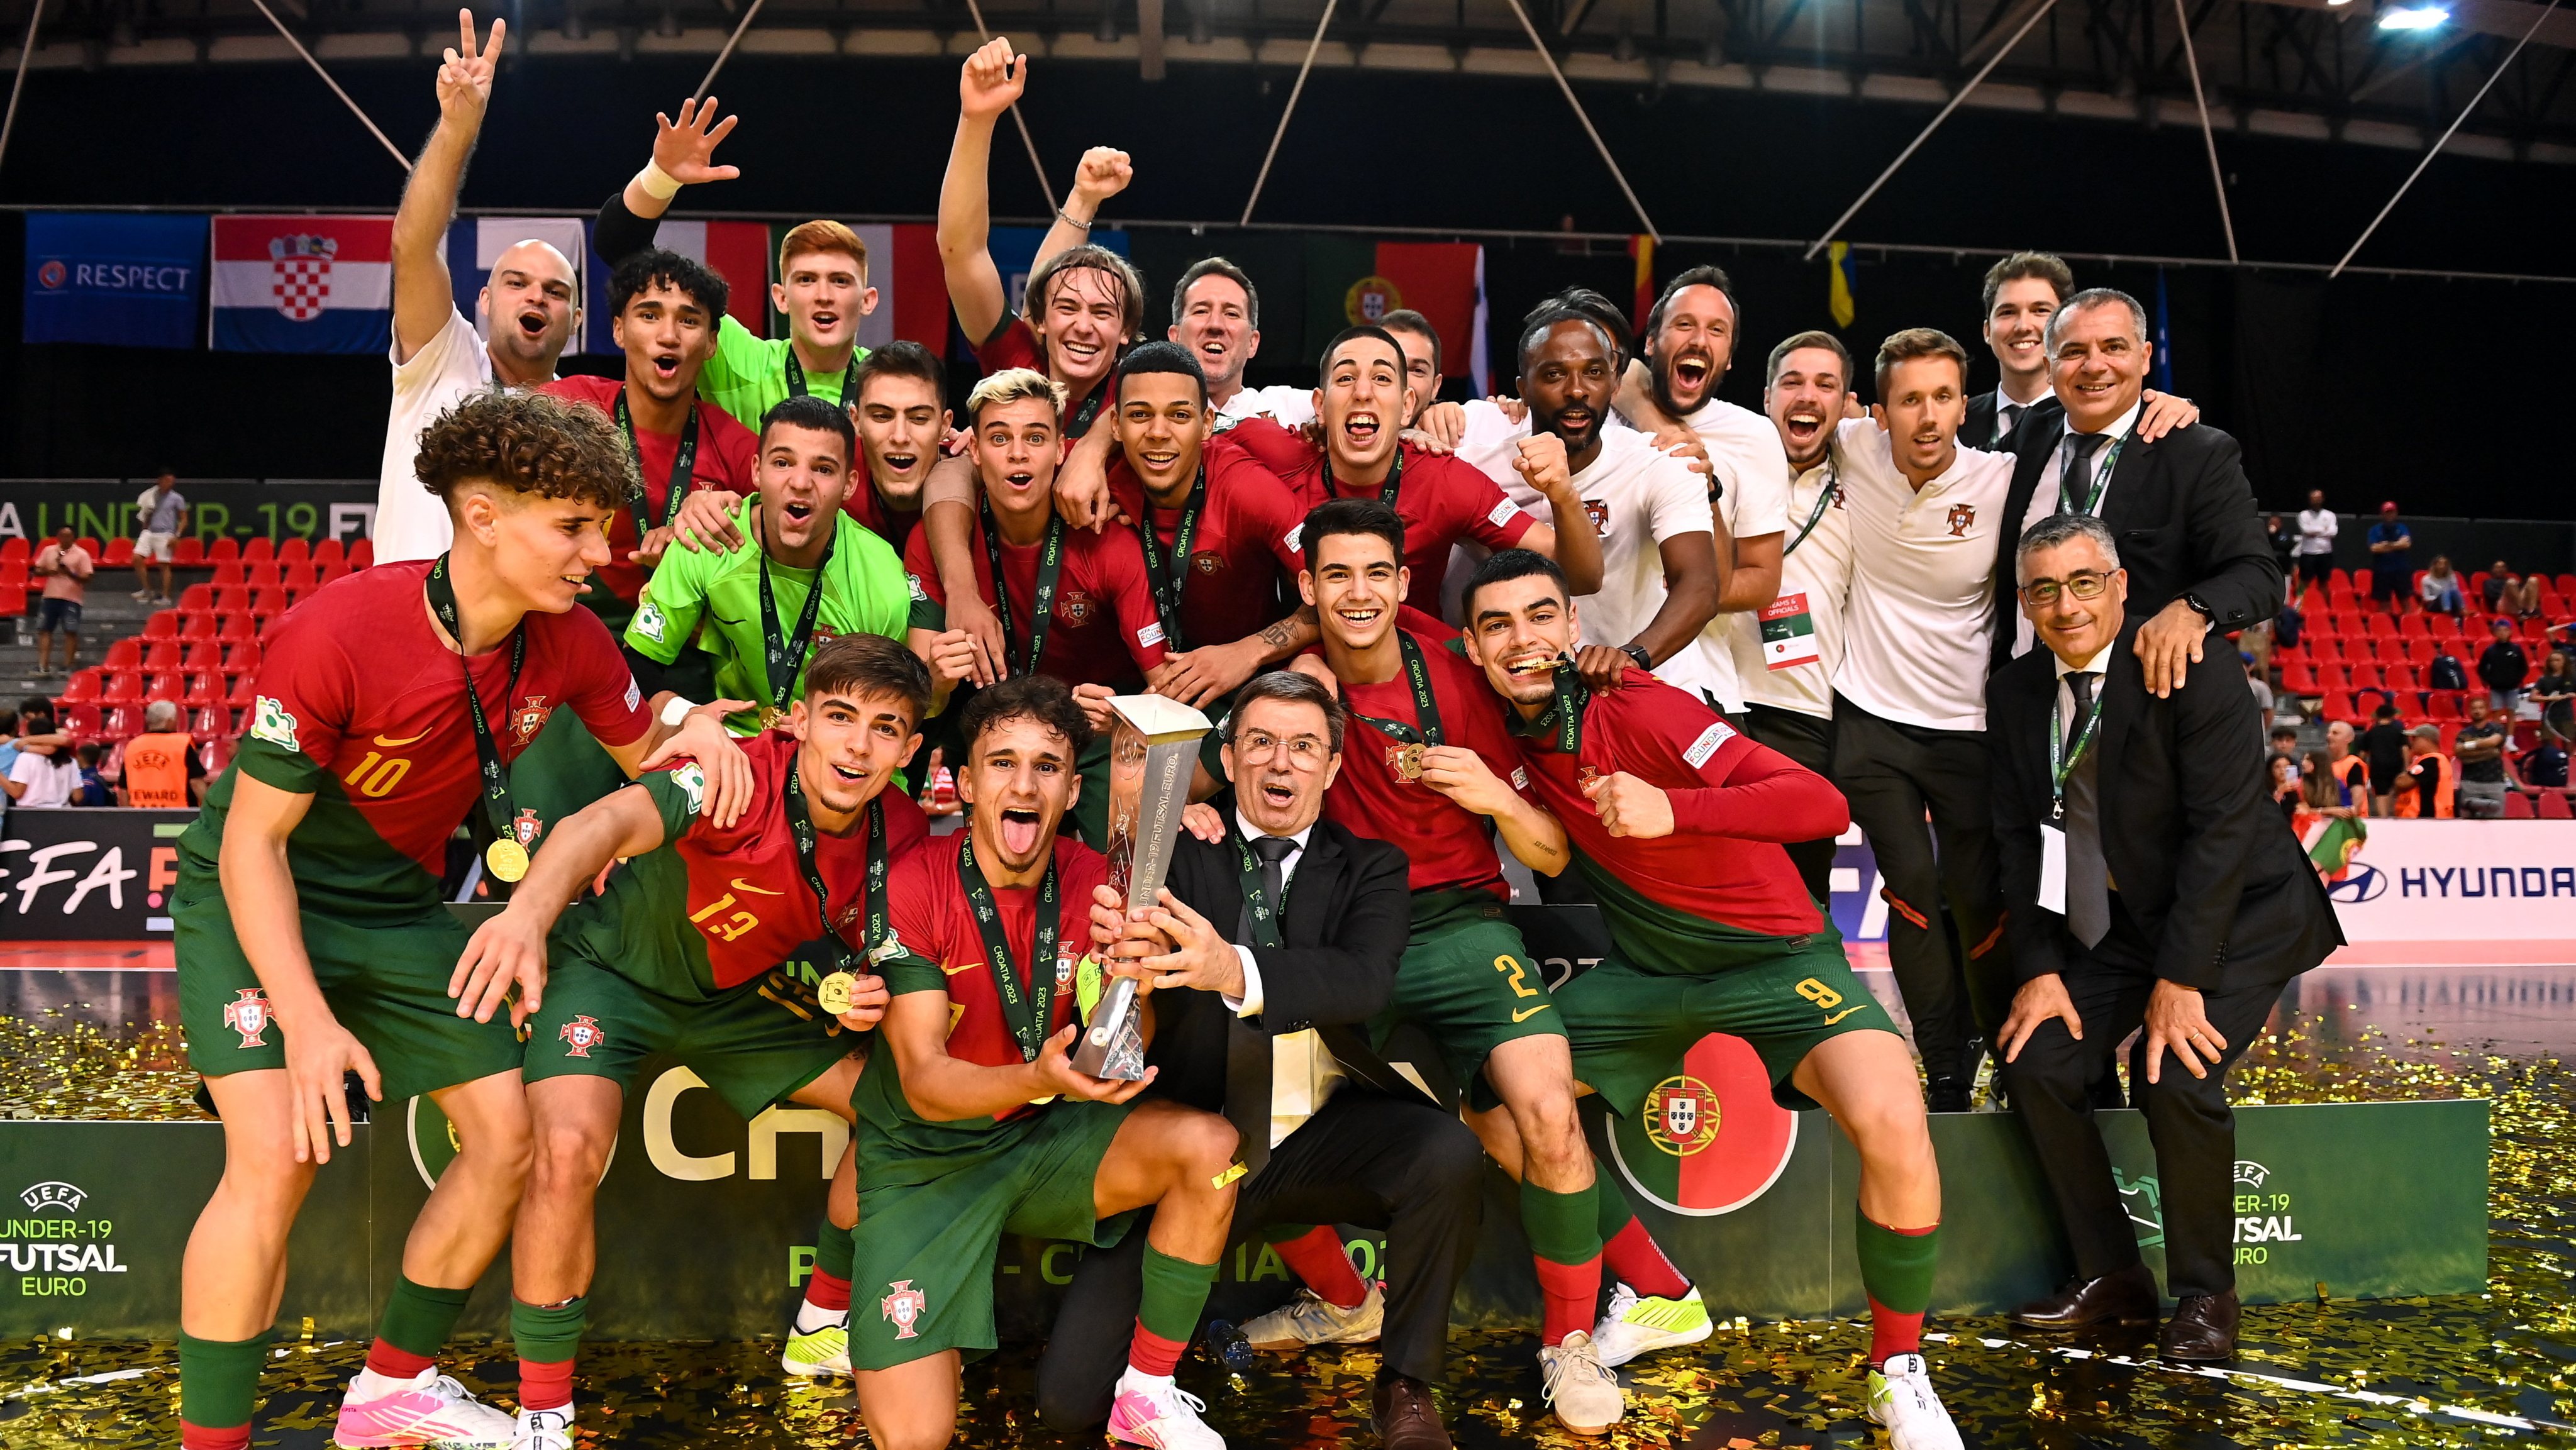 Portugal cai na final. Espanha campeã europeia de sub-19 pela 11.º vez